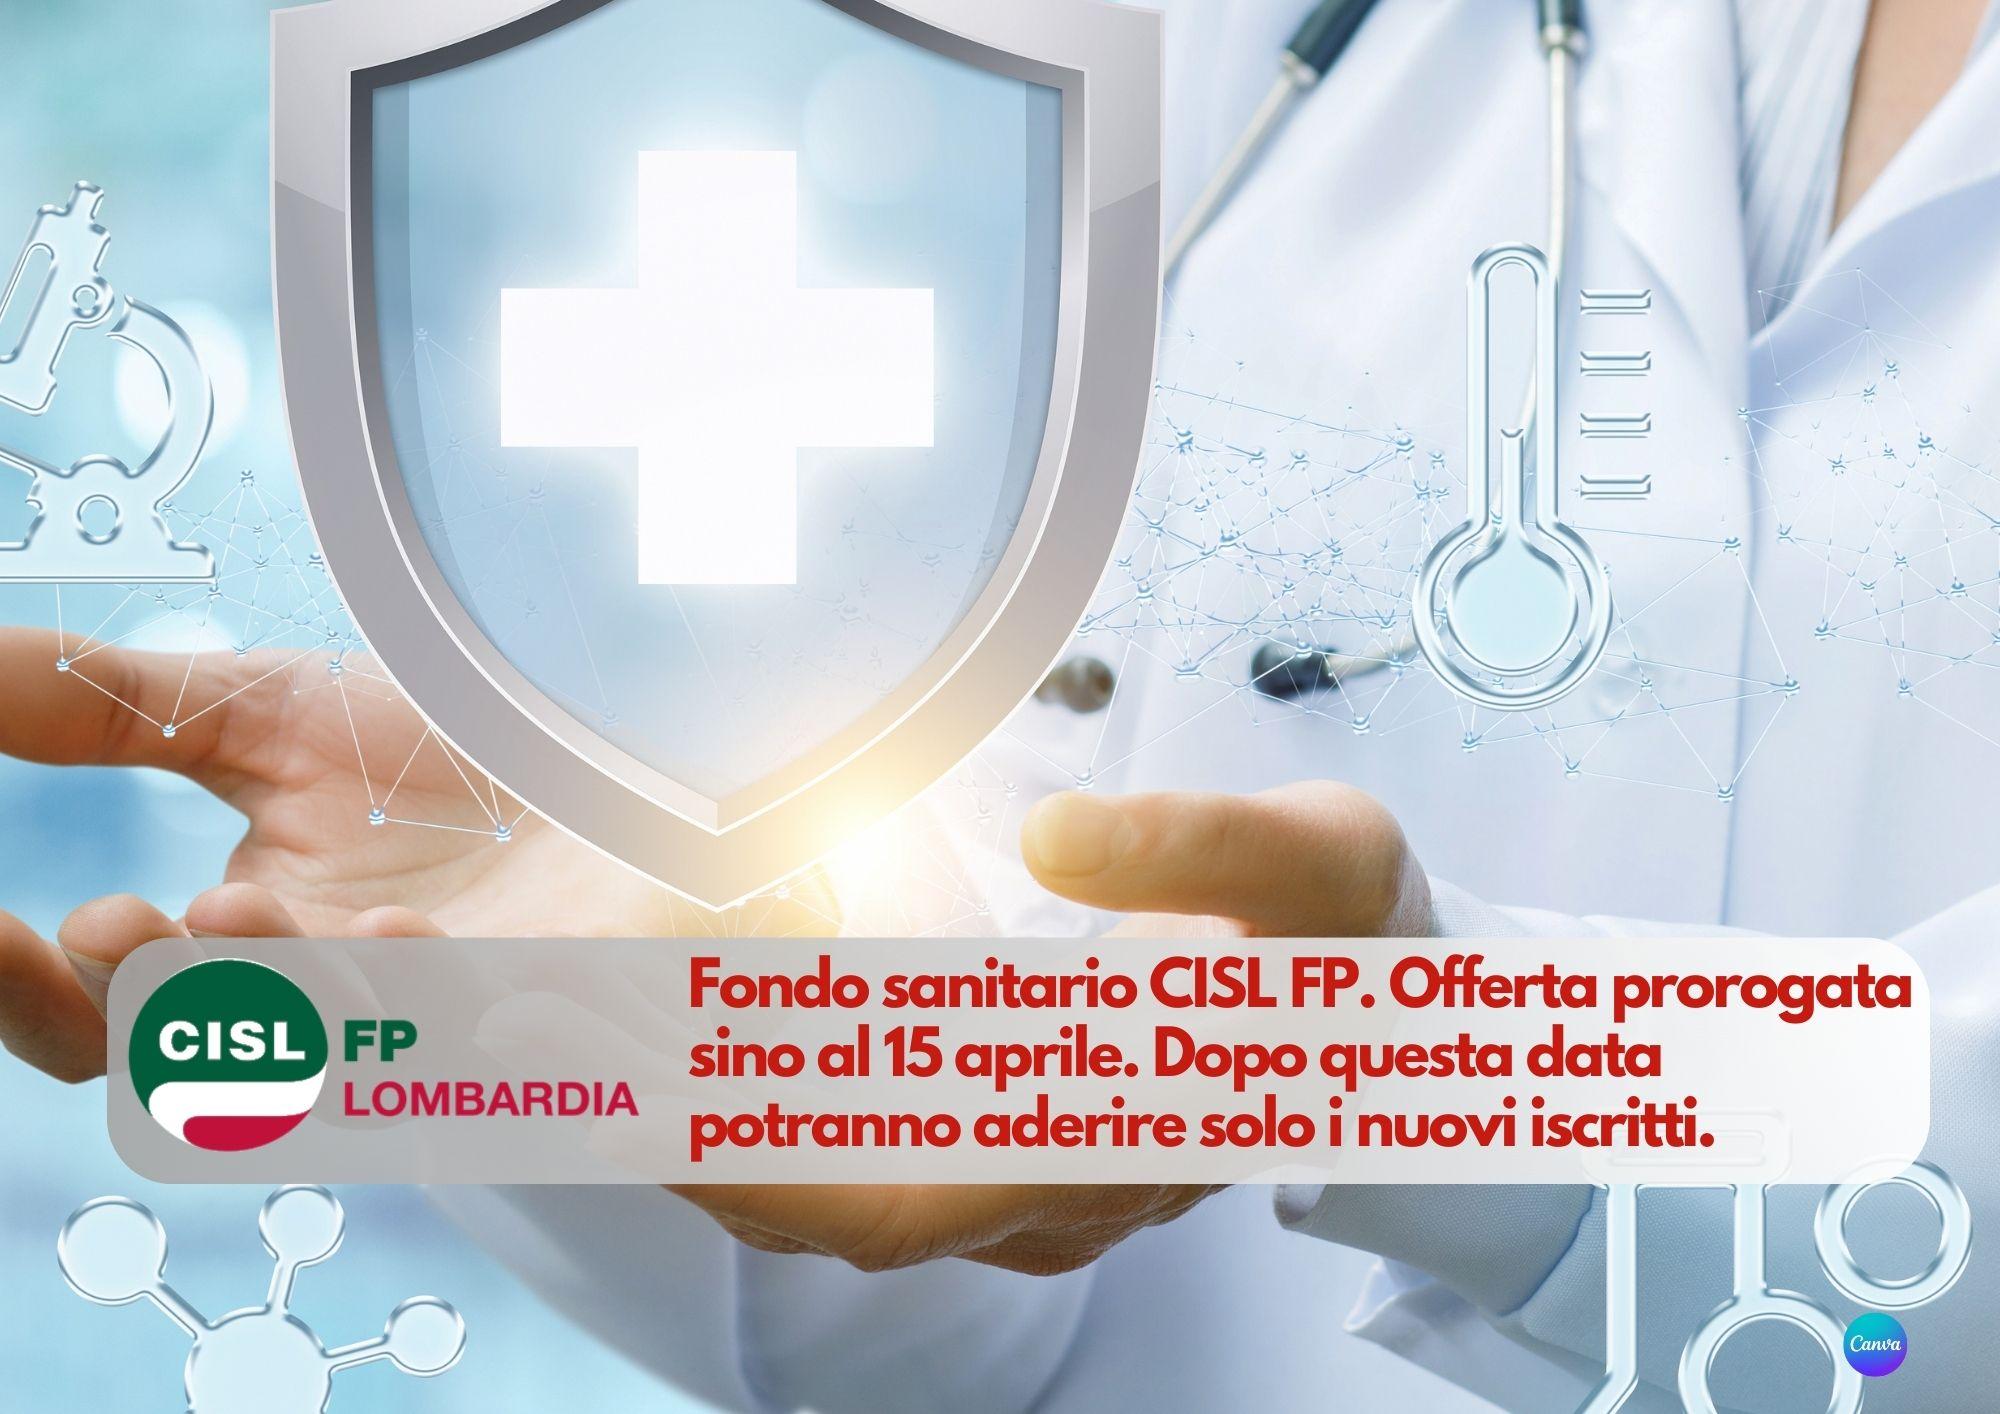 CISL FP Lombardia. Fondo Sanitario CISL FP. Cosa aspetti? l'offerta è prorogata sino al 15 aprile